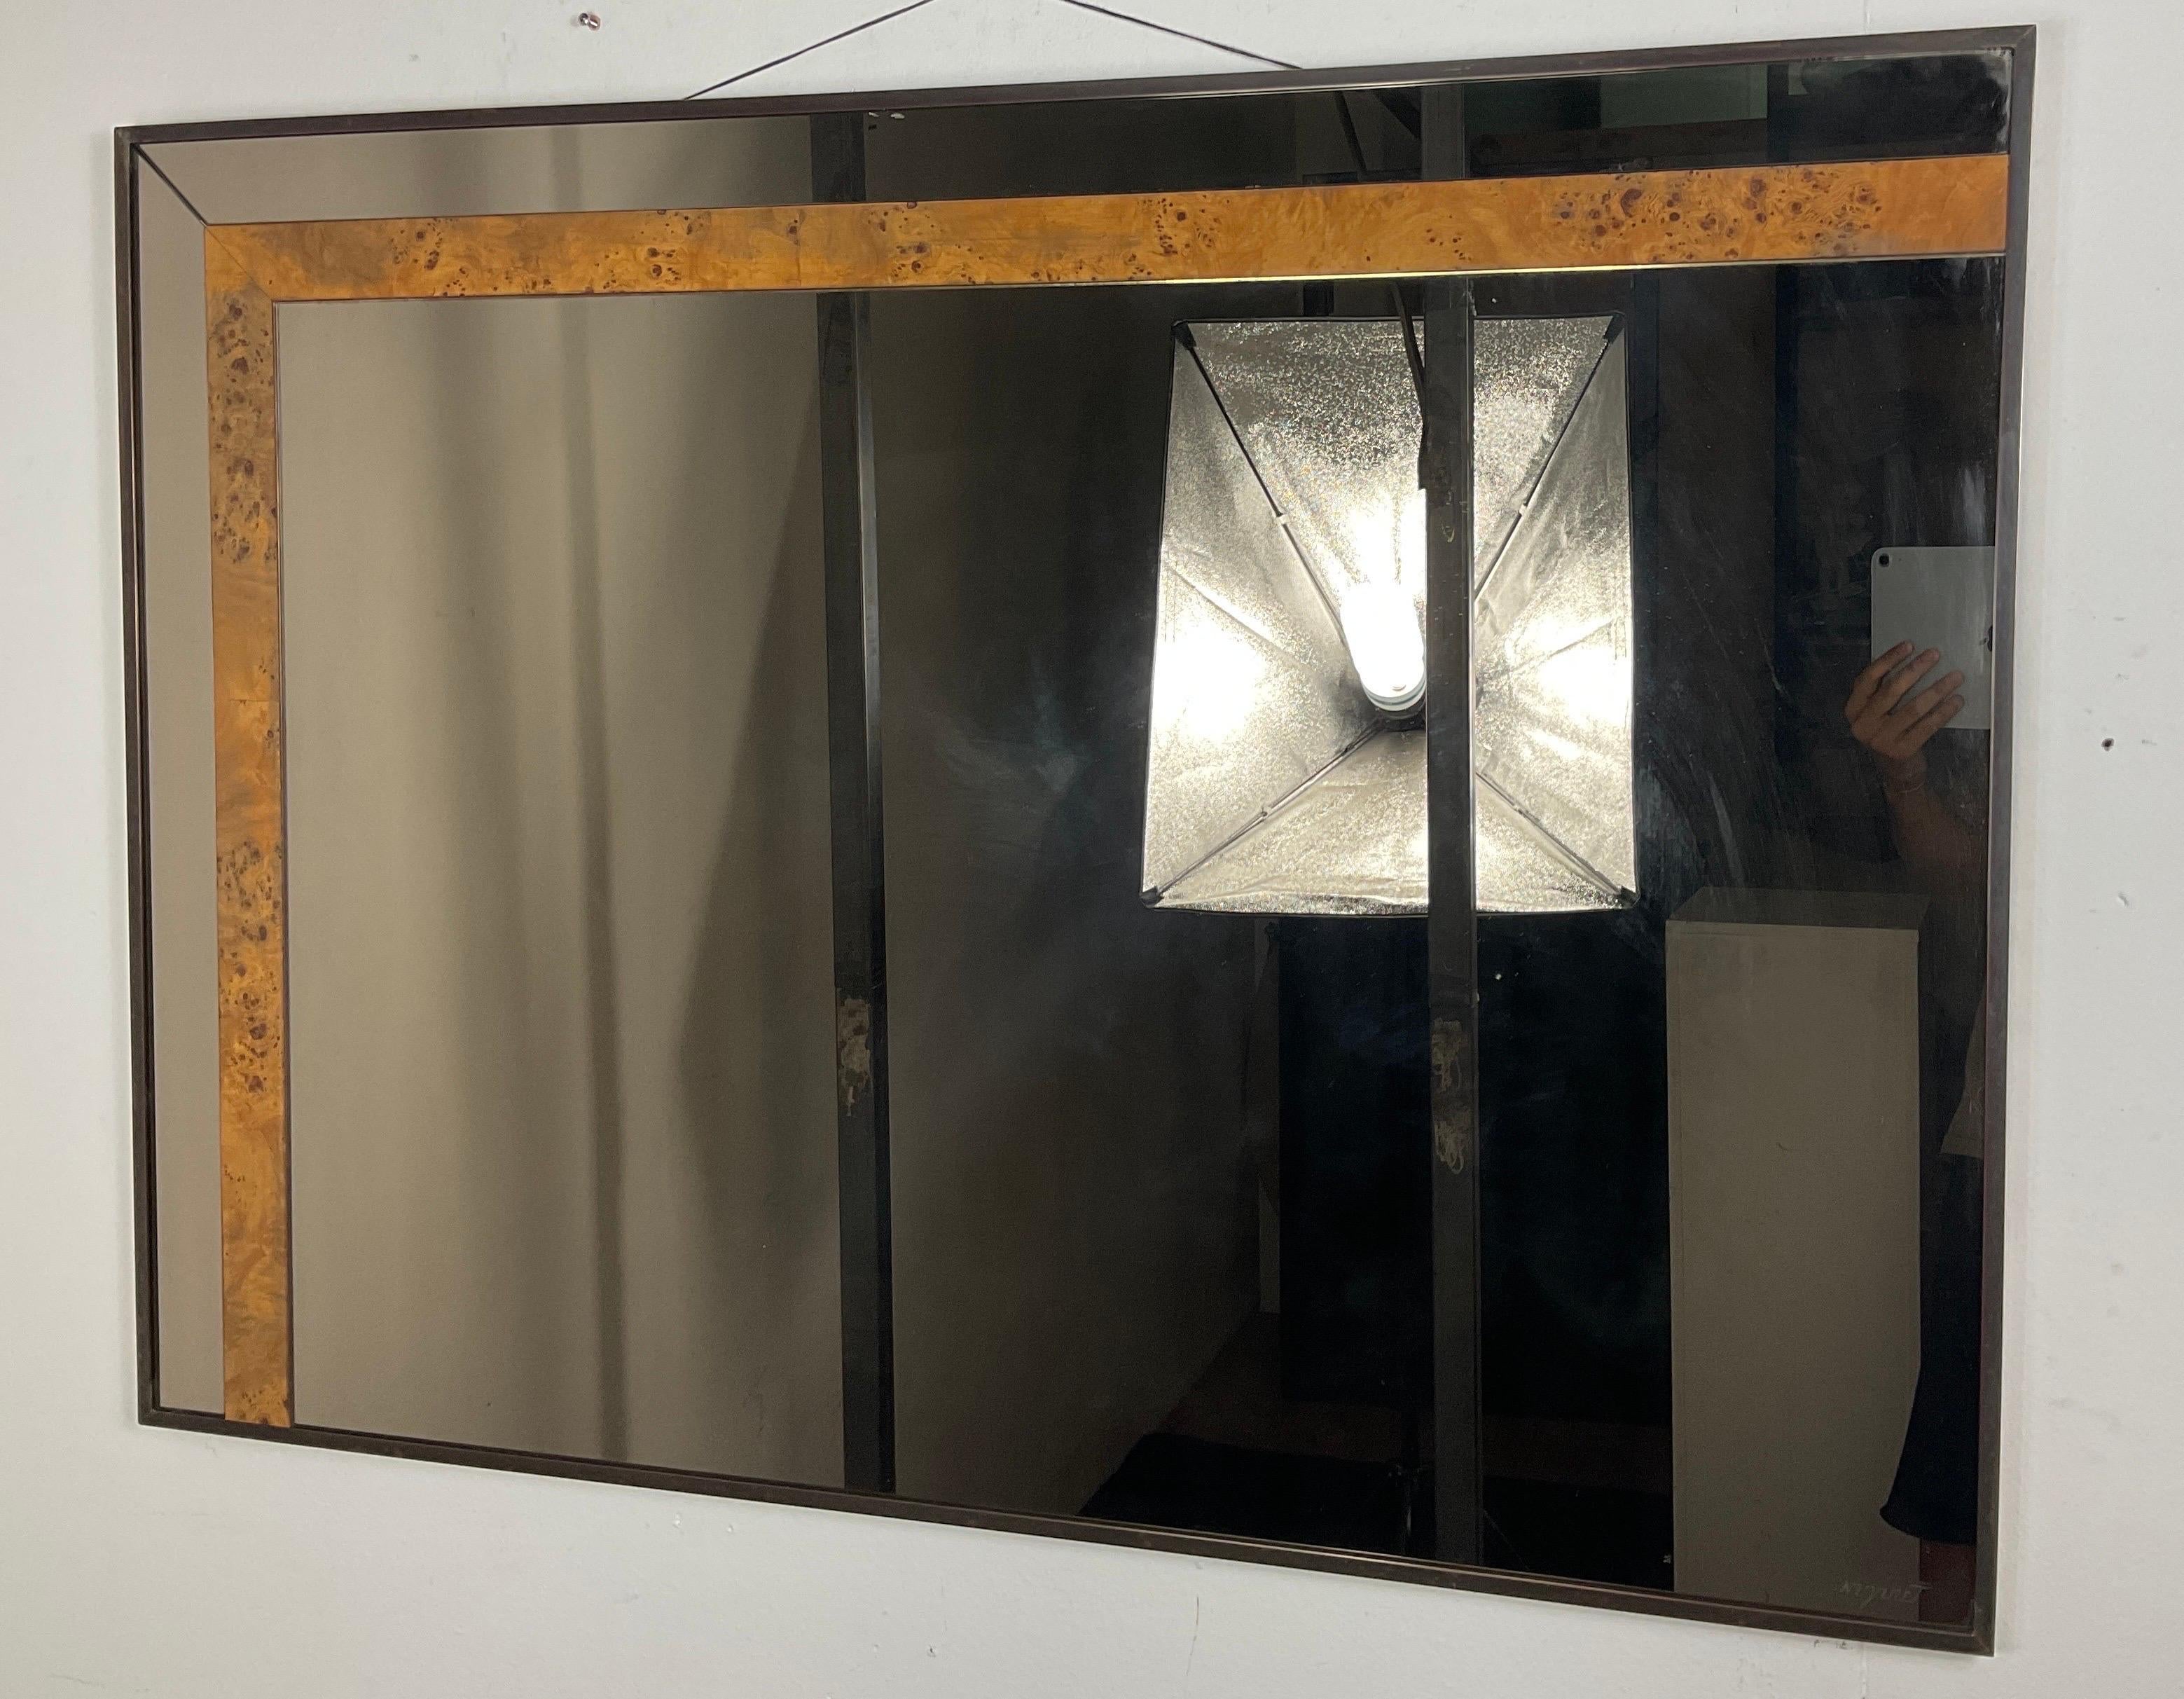 Nazareth-Spiegel aus den 70er Jahren mit Messingrahmen, Holz oberhalb des Spiegelrahmens. In gutem Zustand mit kleinen Abnutzungserscheinungen, die durch den Gebrauch und den Lauf der Jahre verursacht wurden